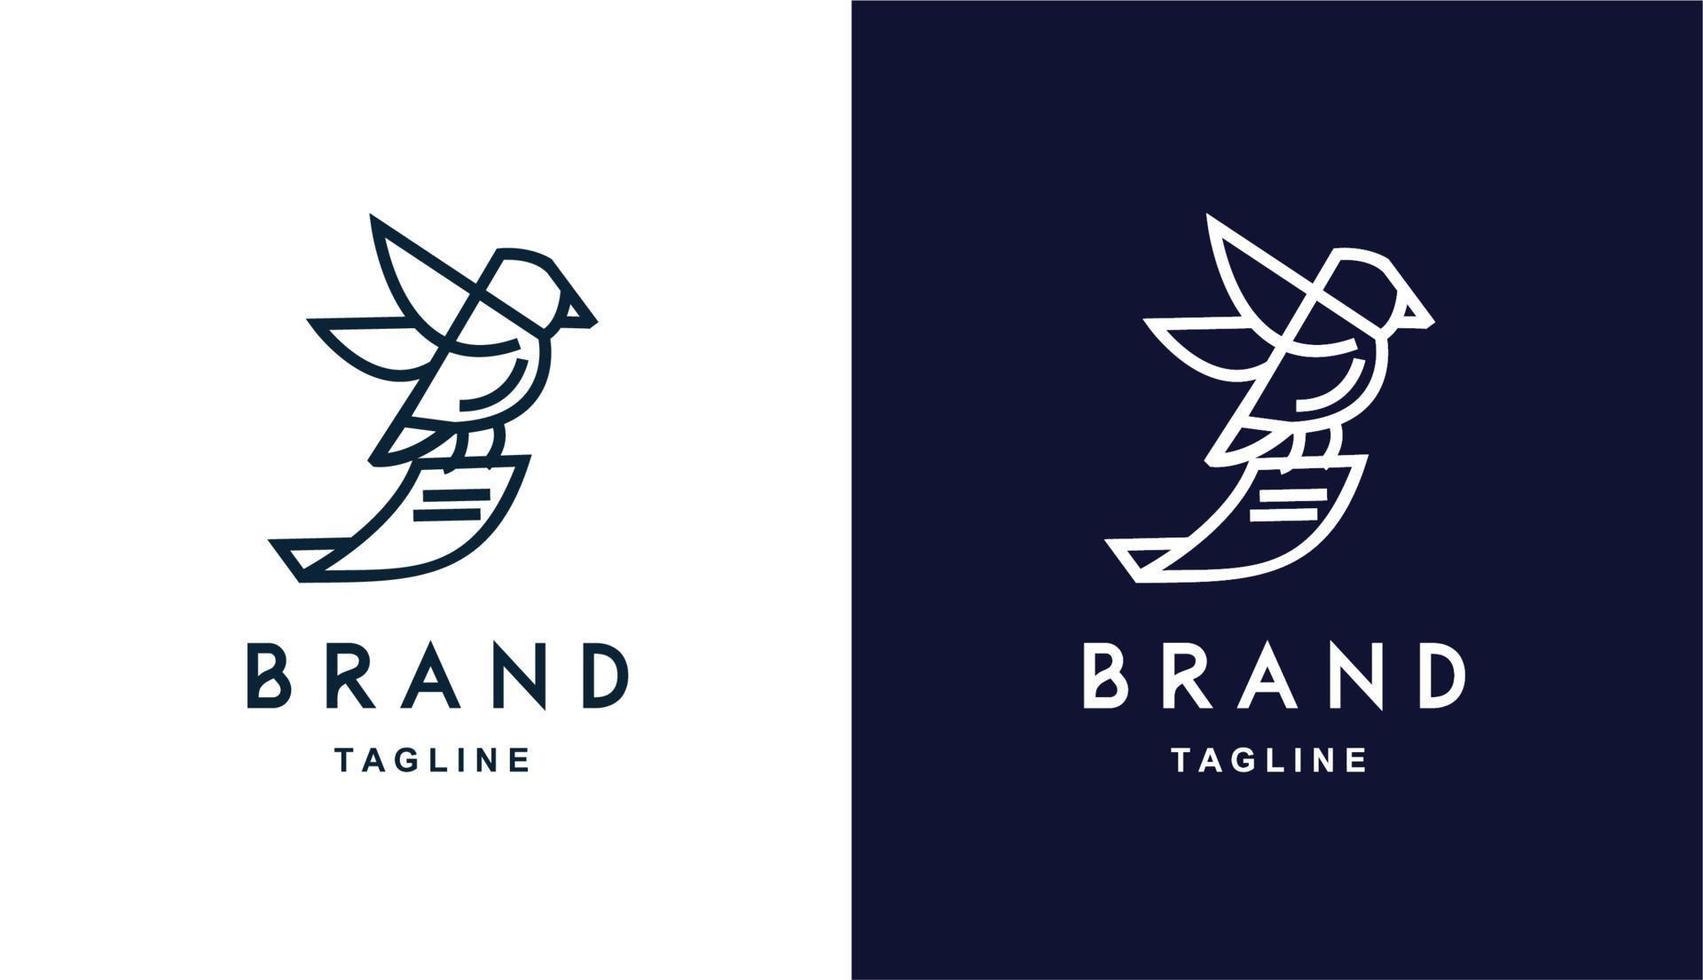 vektor fågel ta med papper minimalistisk enkel logotyp perfekt för alla märken och företag